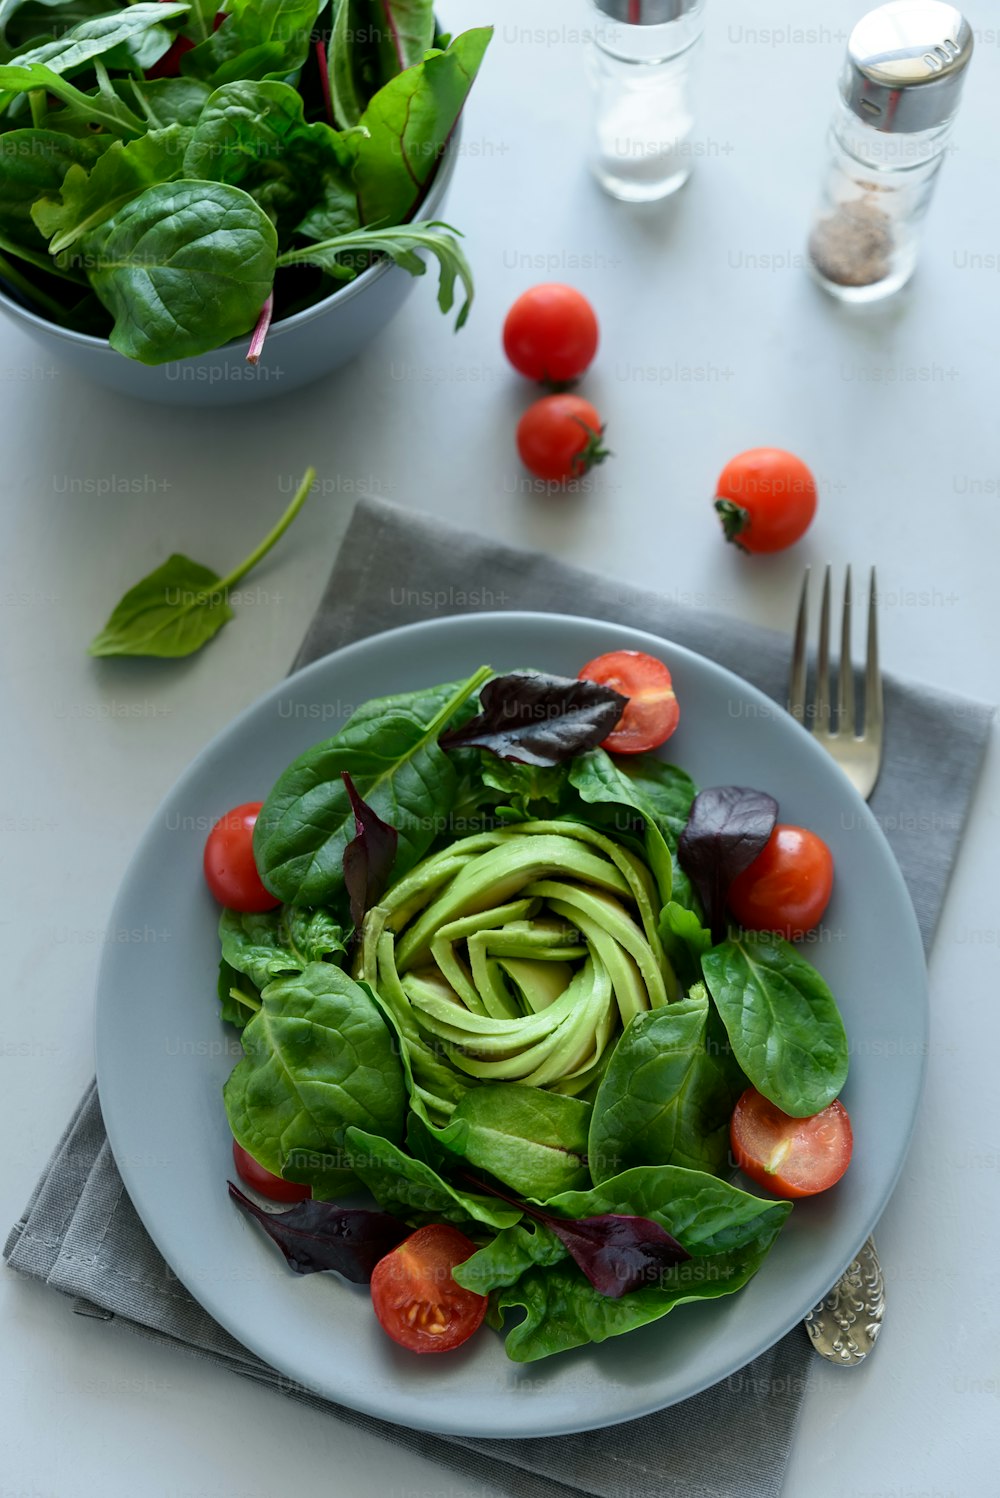 Mezcla de ensalada con aguacate, espinacas, tomates y hojas de remolacha sobre fondo de madera gris. Concepto de comida vegetariana. Enfoque selectivo.